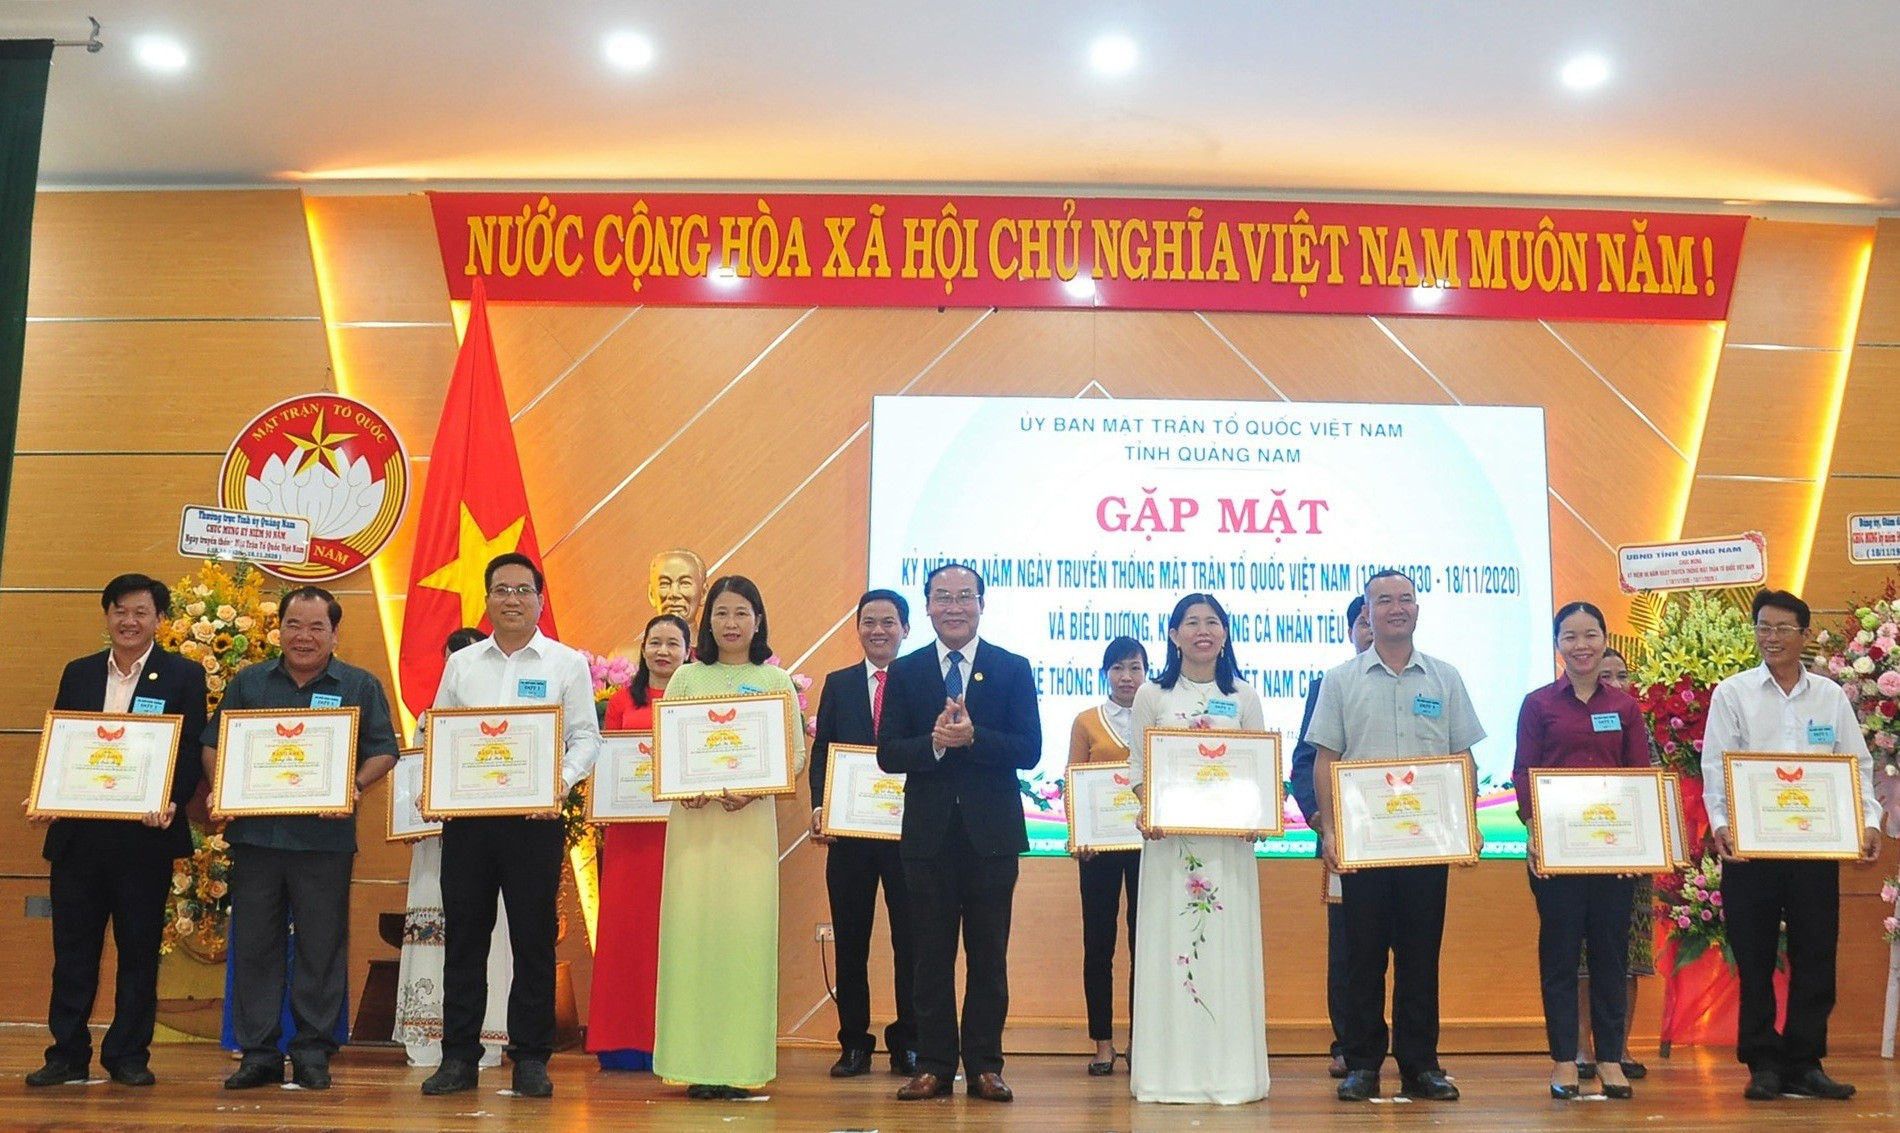 Ủy ban MTTQ Việt Nam biểu dương các cá nhân tiêu biểu có thành tích xuất sắc trong công tác Mặt trận giai đoạn 2015 - 2020. Ảnh: VINH ANH